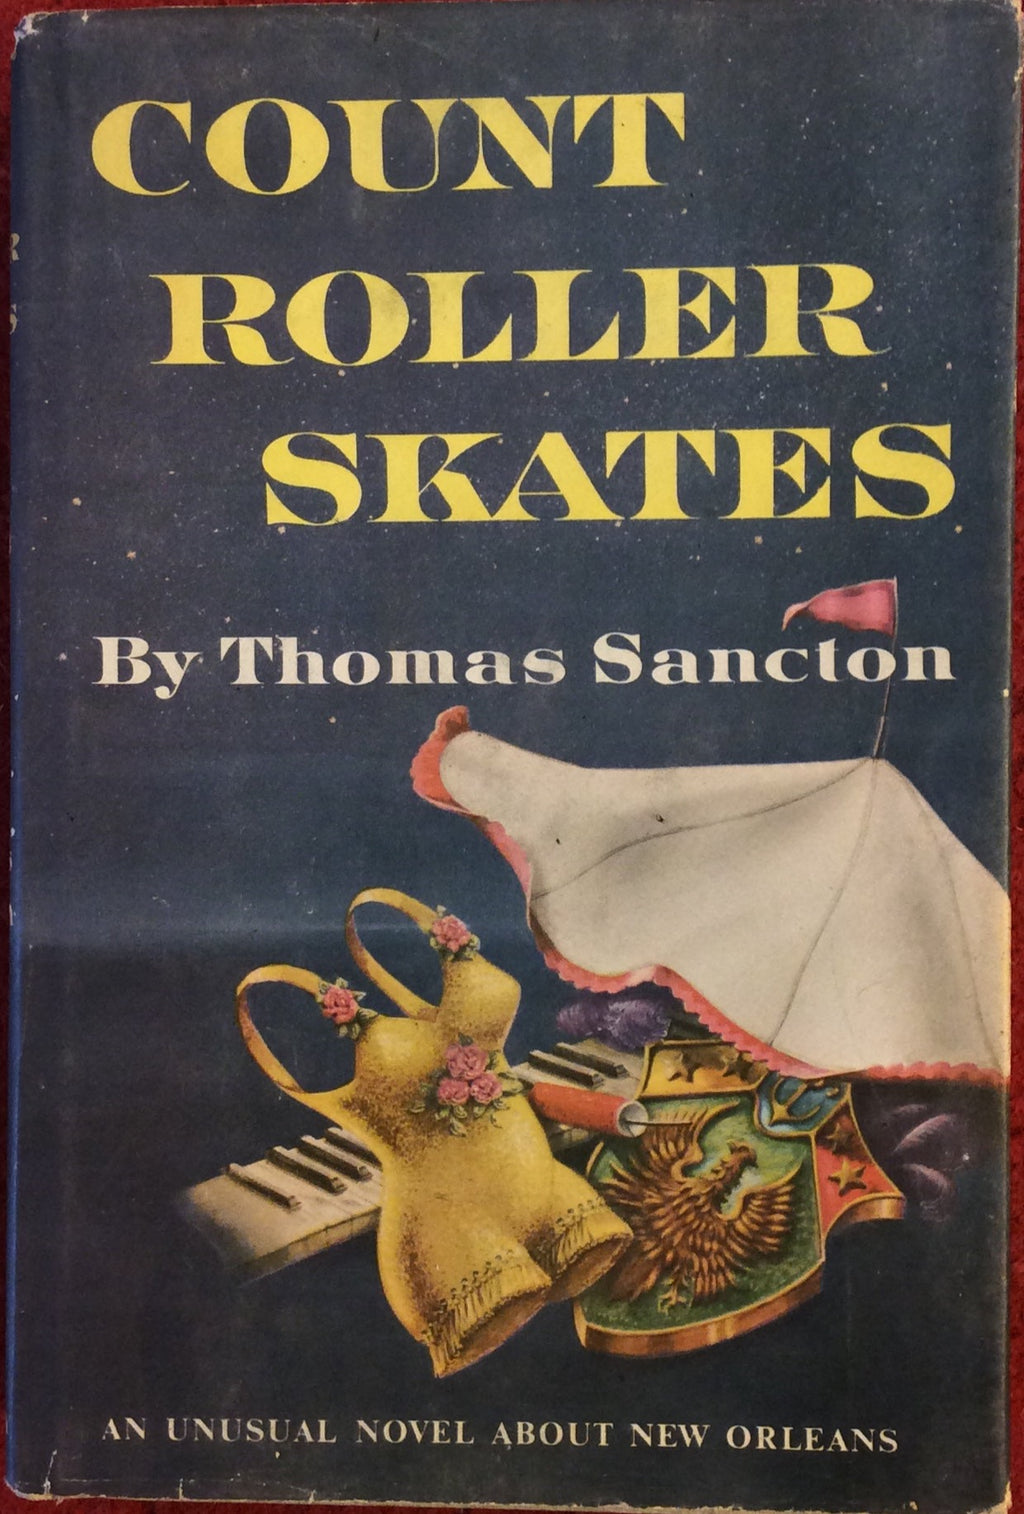 Count Roller Skates, Thomas Sancton, Doubleday, 1956*